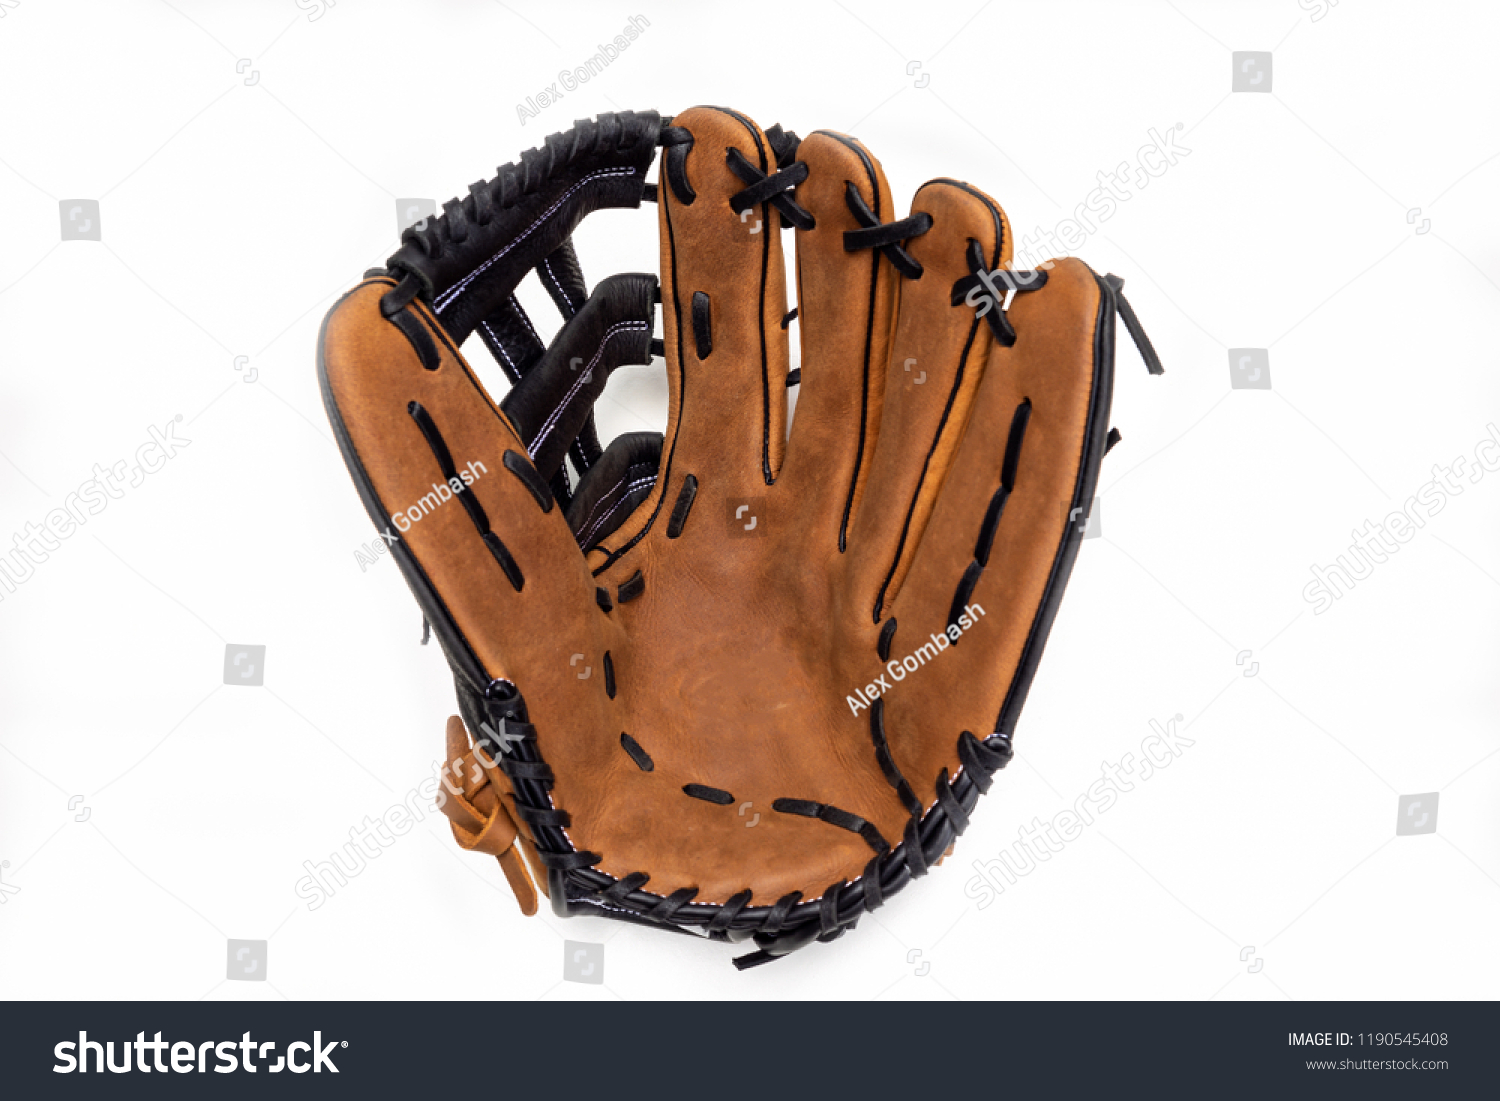 Baseball glove on white background opened up. #1190545408